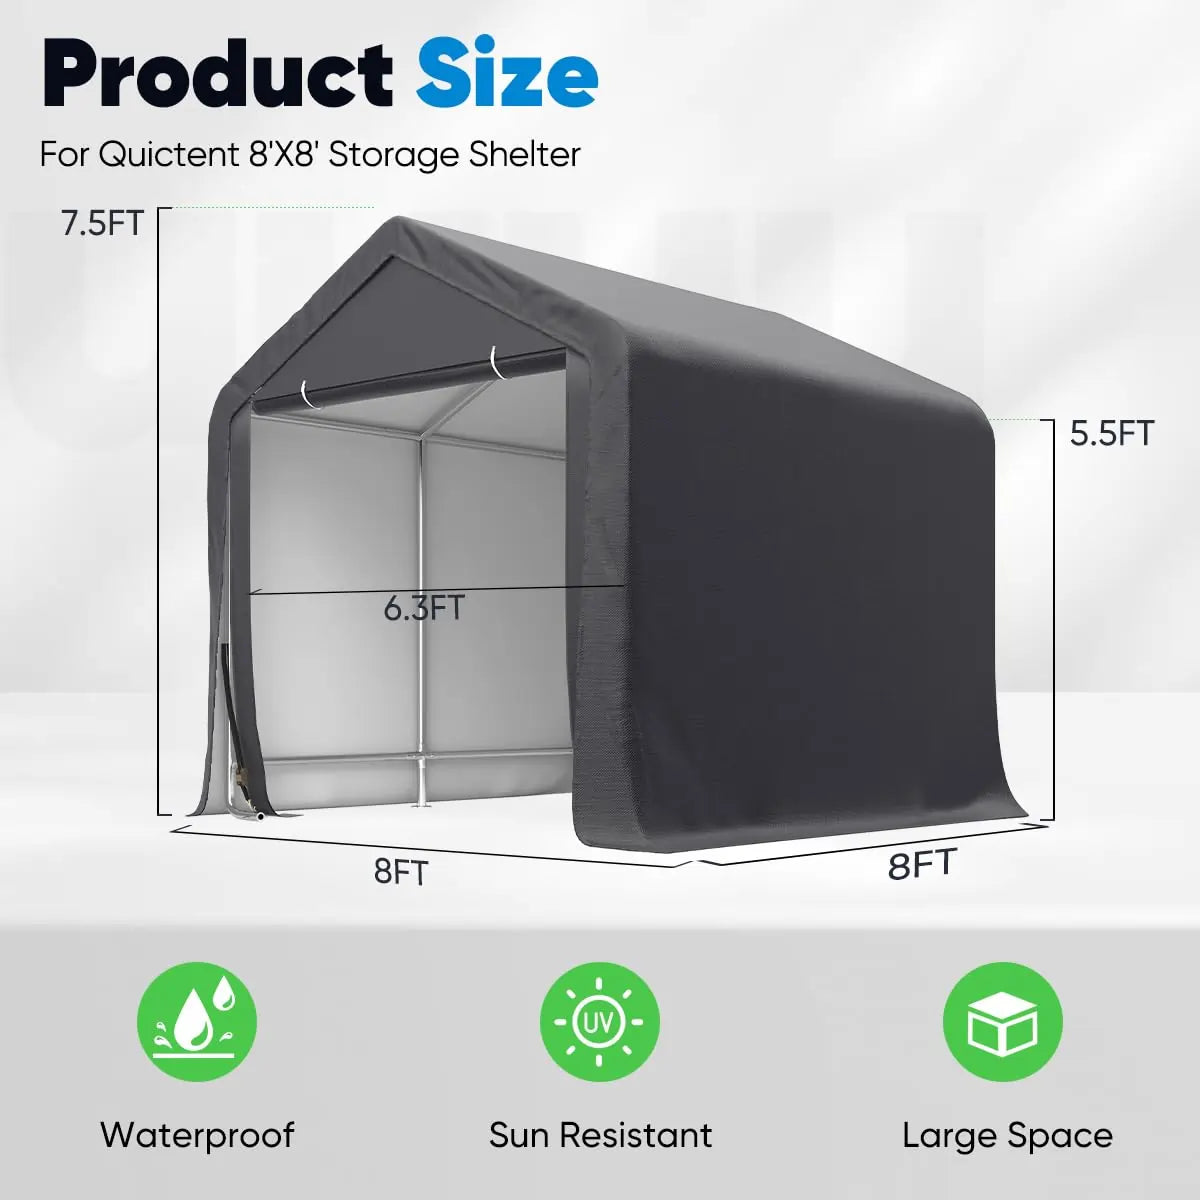 8' x 8' Portable Garage Outdoor Storage Size Details